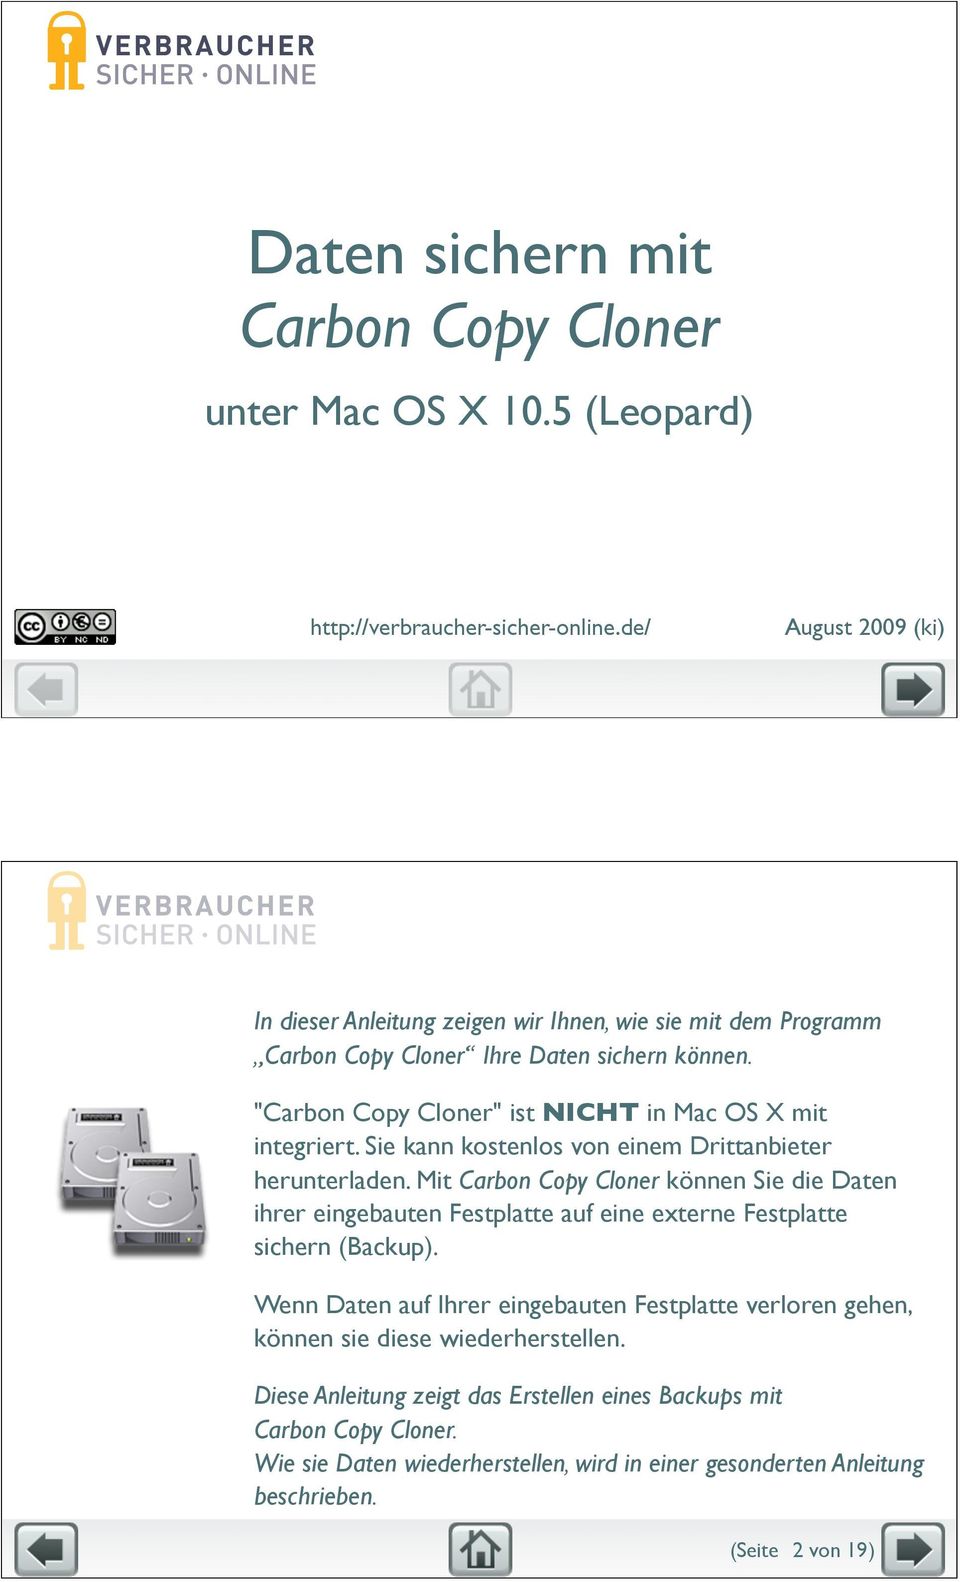 "Carbon Copy Cloner" ist NICHT in Mac OS X mit integriert. Sie kann kostenlos von einem Drittanbieter herunterladen.